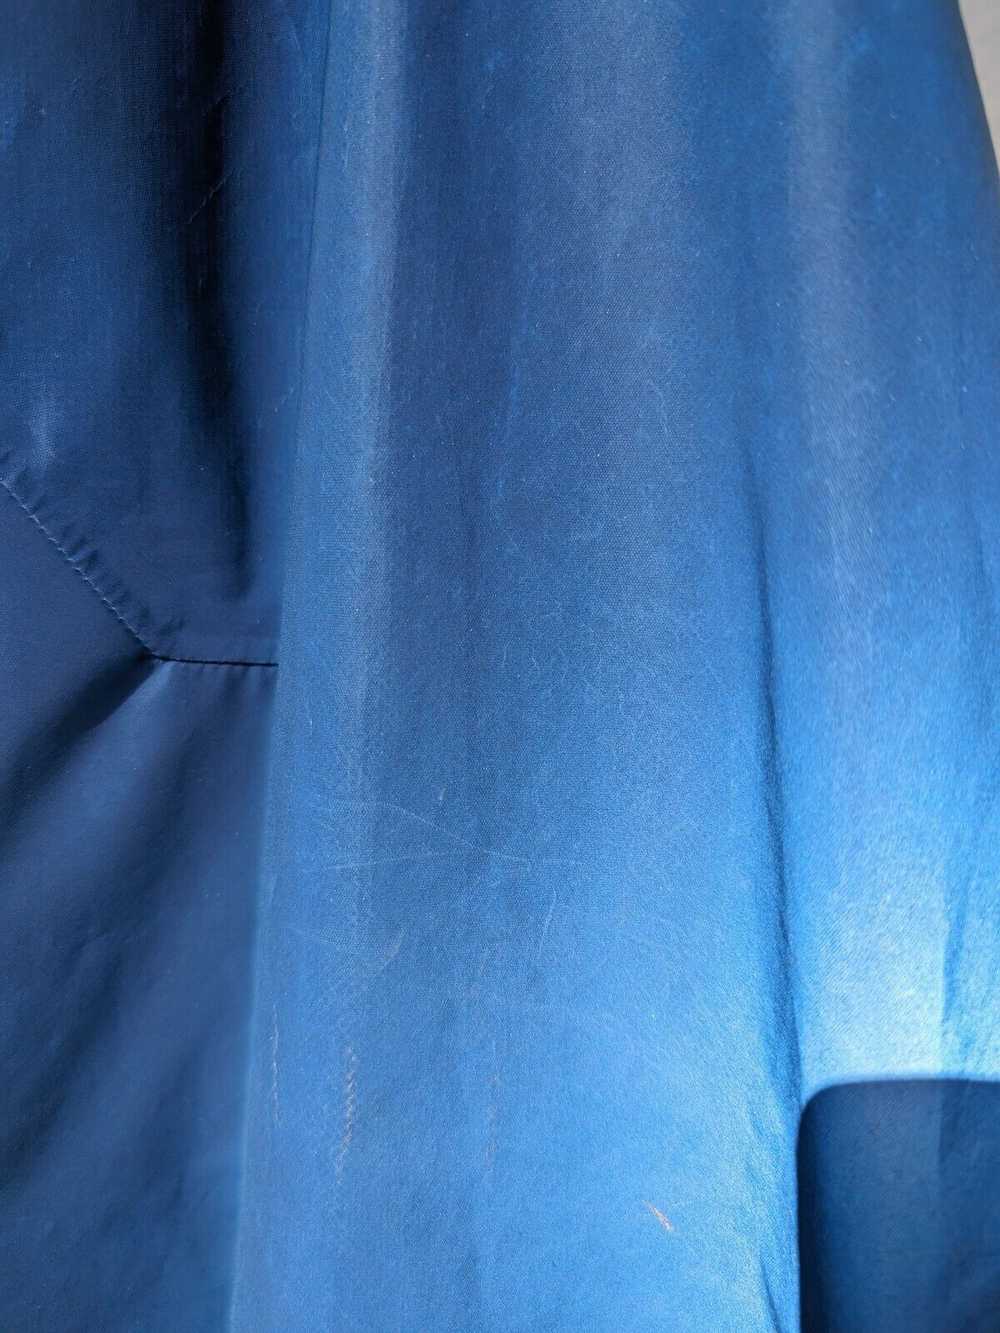 Other Vollebak Jacket Blue Morpho Size L, Rare - image 11